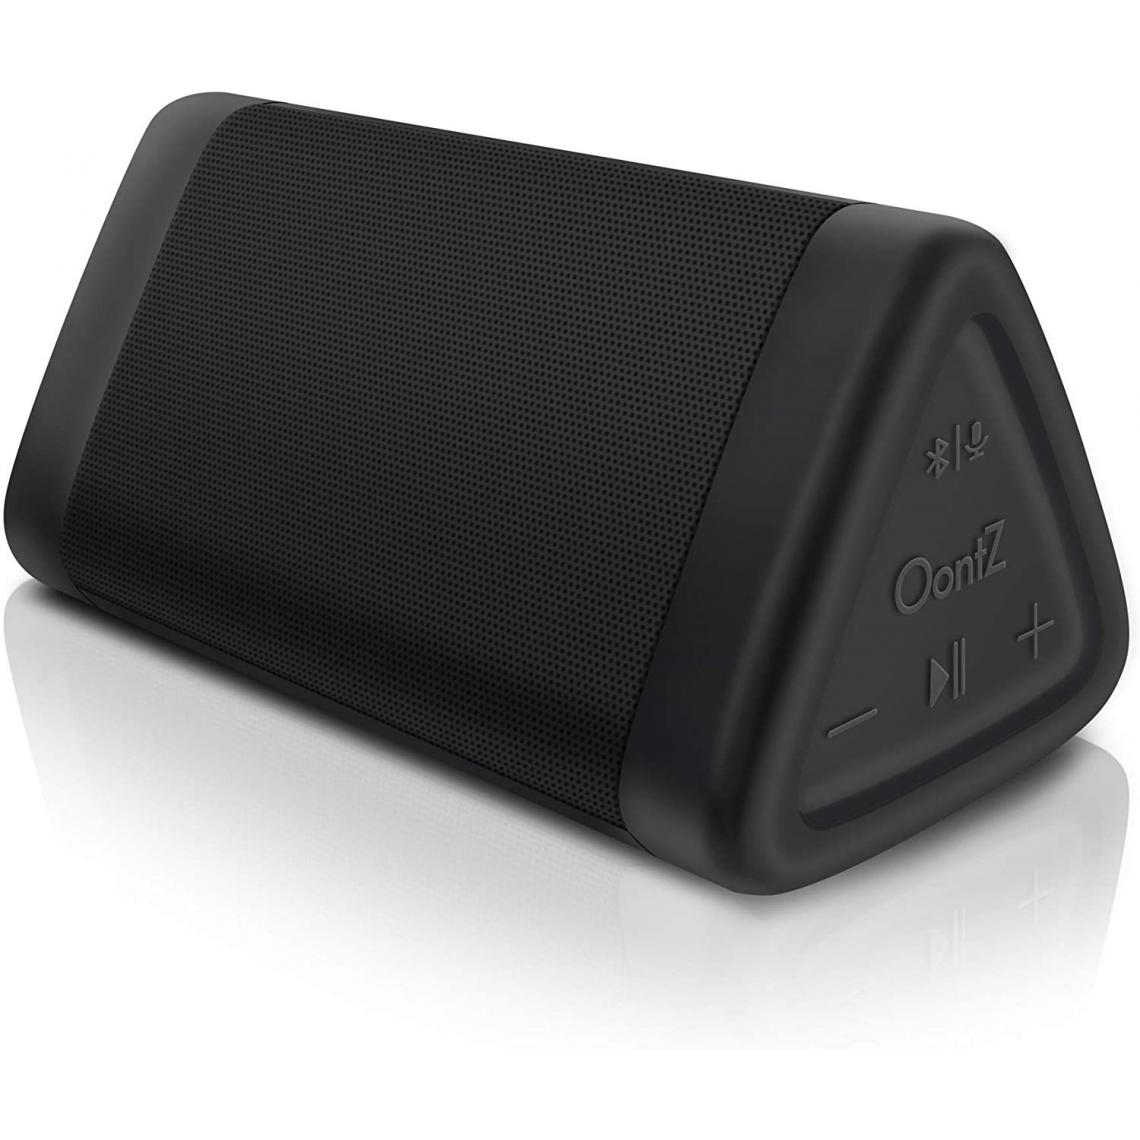 Chrono - Haut-parleur Bluetooth portable OontZ Angle 3 (3e génération), son stéréo plus cristallin, basses riches, portée de haut-parleurs sans fil de 100 pieds, IPX5, haut-parleurs Bluetooth par Cambridge SoundWorks(Noir) - Enceintes Hifi